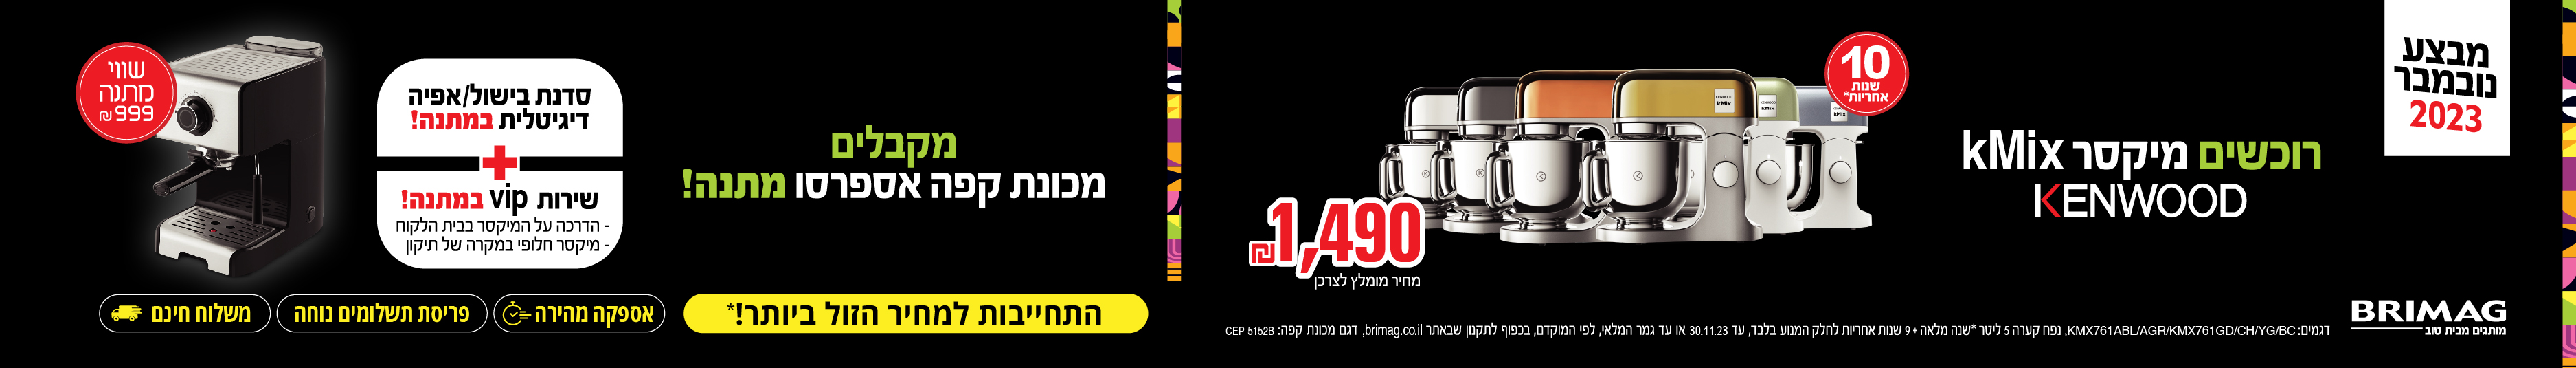 מגיע לך הטוב ביותר KitechenAid מותג המיקסרים מספר 1 בעולם 5* שנות אחריות על המיקסר בקנייה ממשווק מורשה של ניופאן. קנו מיקסר* KitechAid ותקבלו בלנדר כד יוקרתי מתנה. דגם SKSB1565 בשווי 999 ש"ח (מחיר מומלץ לצרכן) התחייבות למחר הטוב בישראל!* אספקה מהירה, פריס